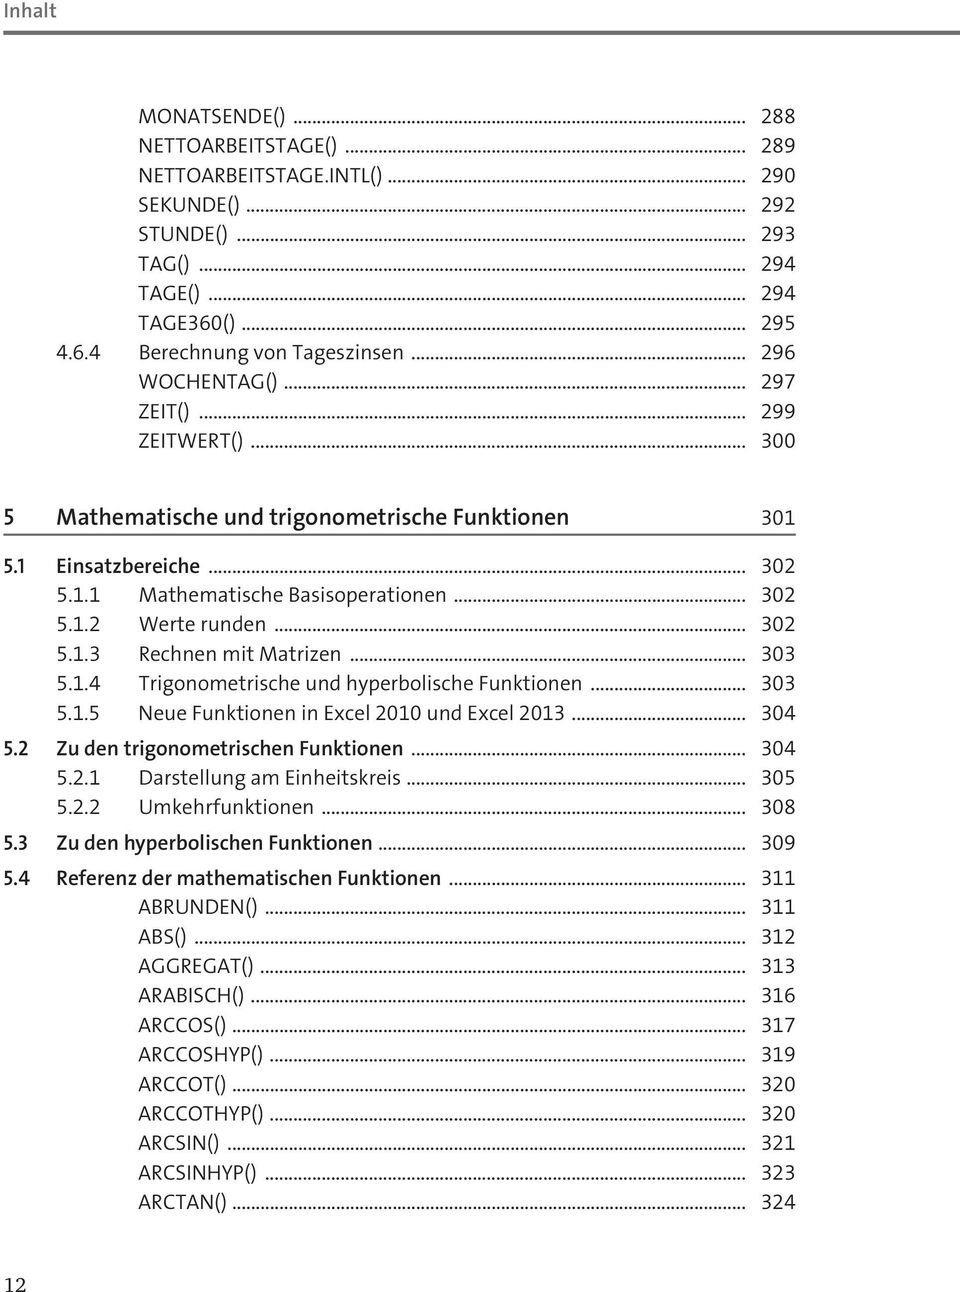 .. 302 5.1.3 Rechnen mit Matrizen... 303 5.1.4 Trigonometrische und hyperbolische Funktionen... 303 5.1.5 Neue Funktionen in Excel 2010 und Excel 2013... 304 5.2 Zu den trigonometrischen Funktionen.